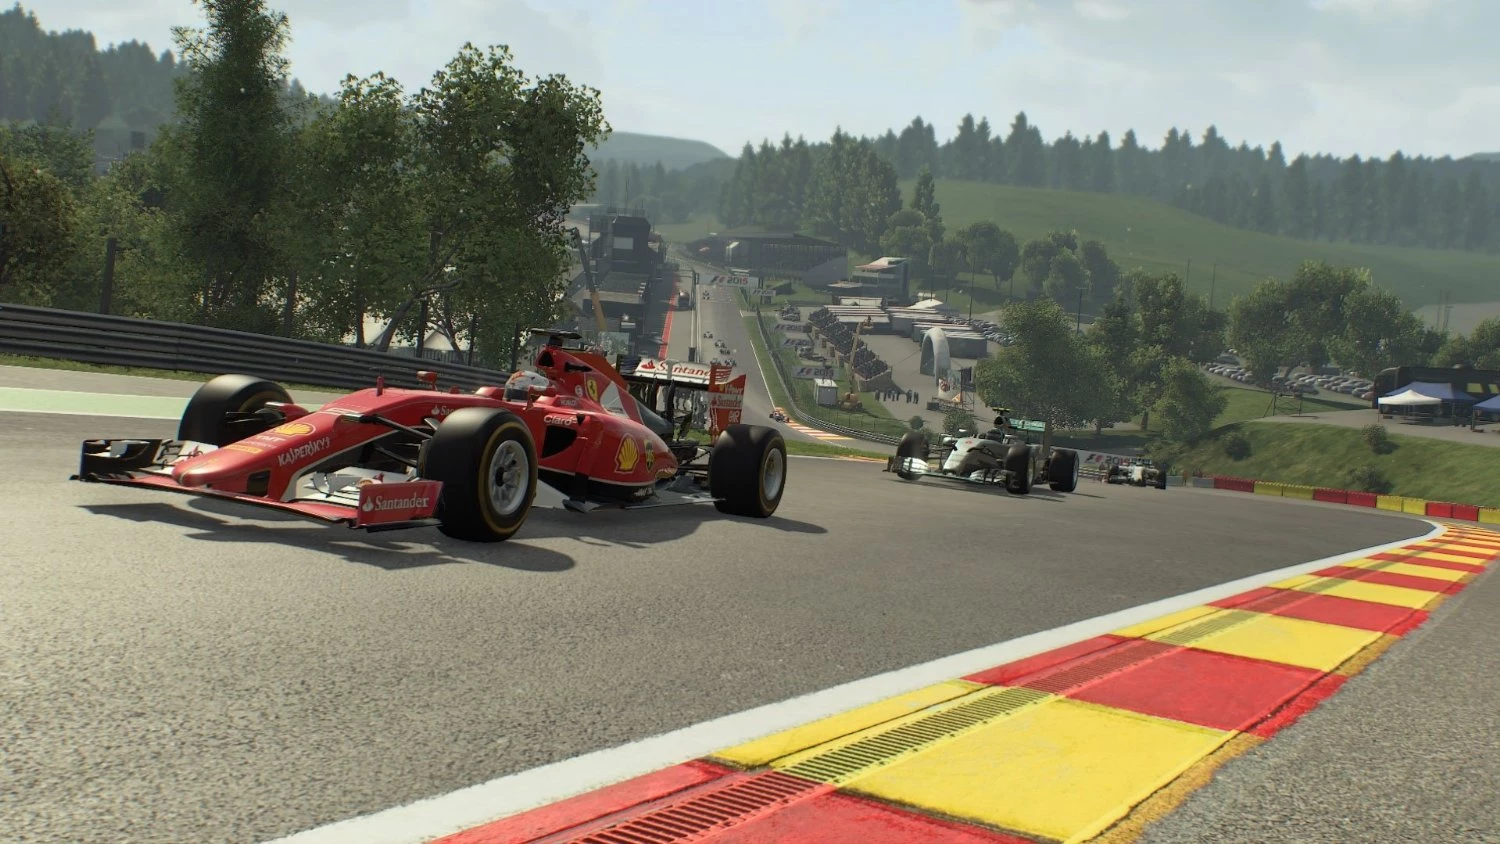 Formula 1 (F1 2015) voor de Xbox One kopen op nedgame.nl